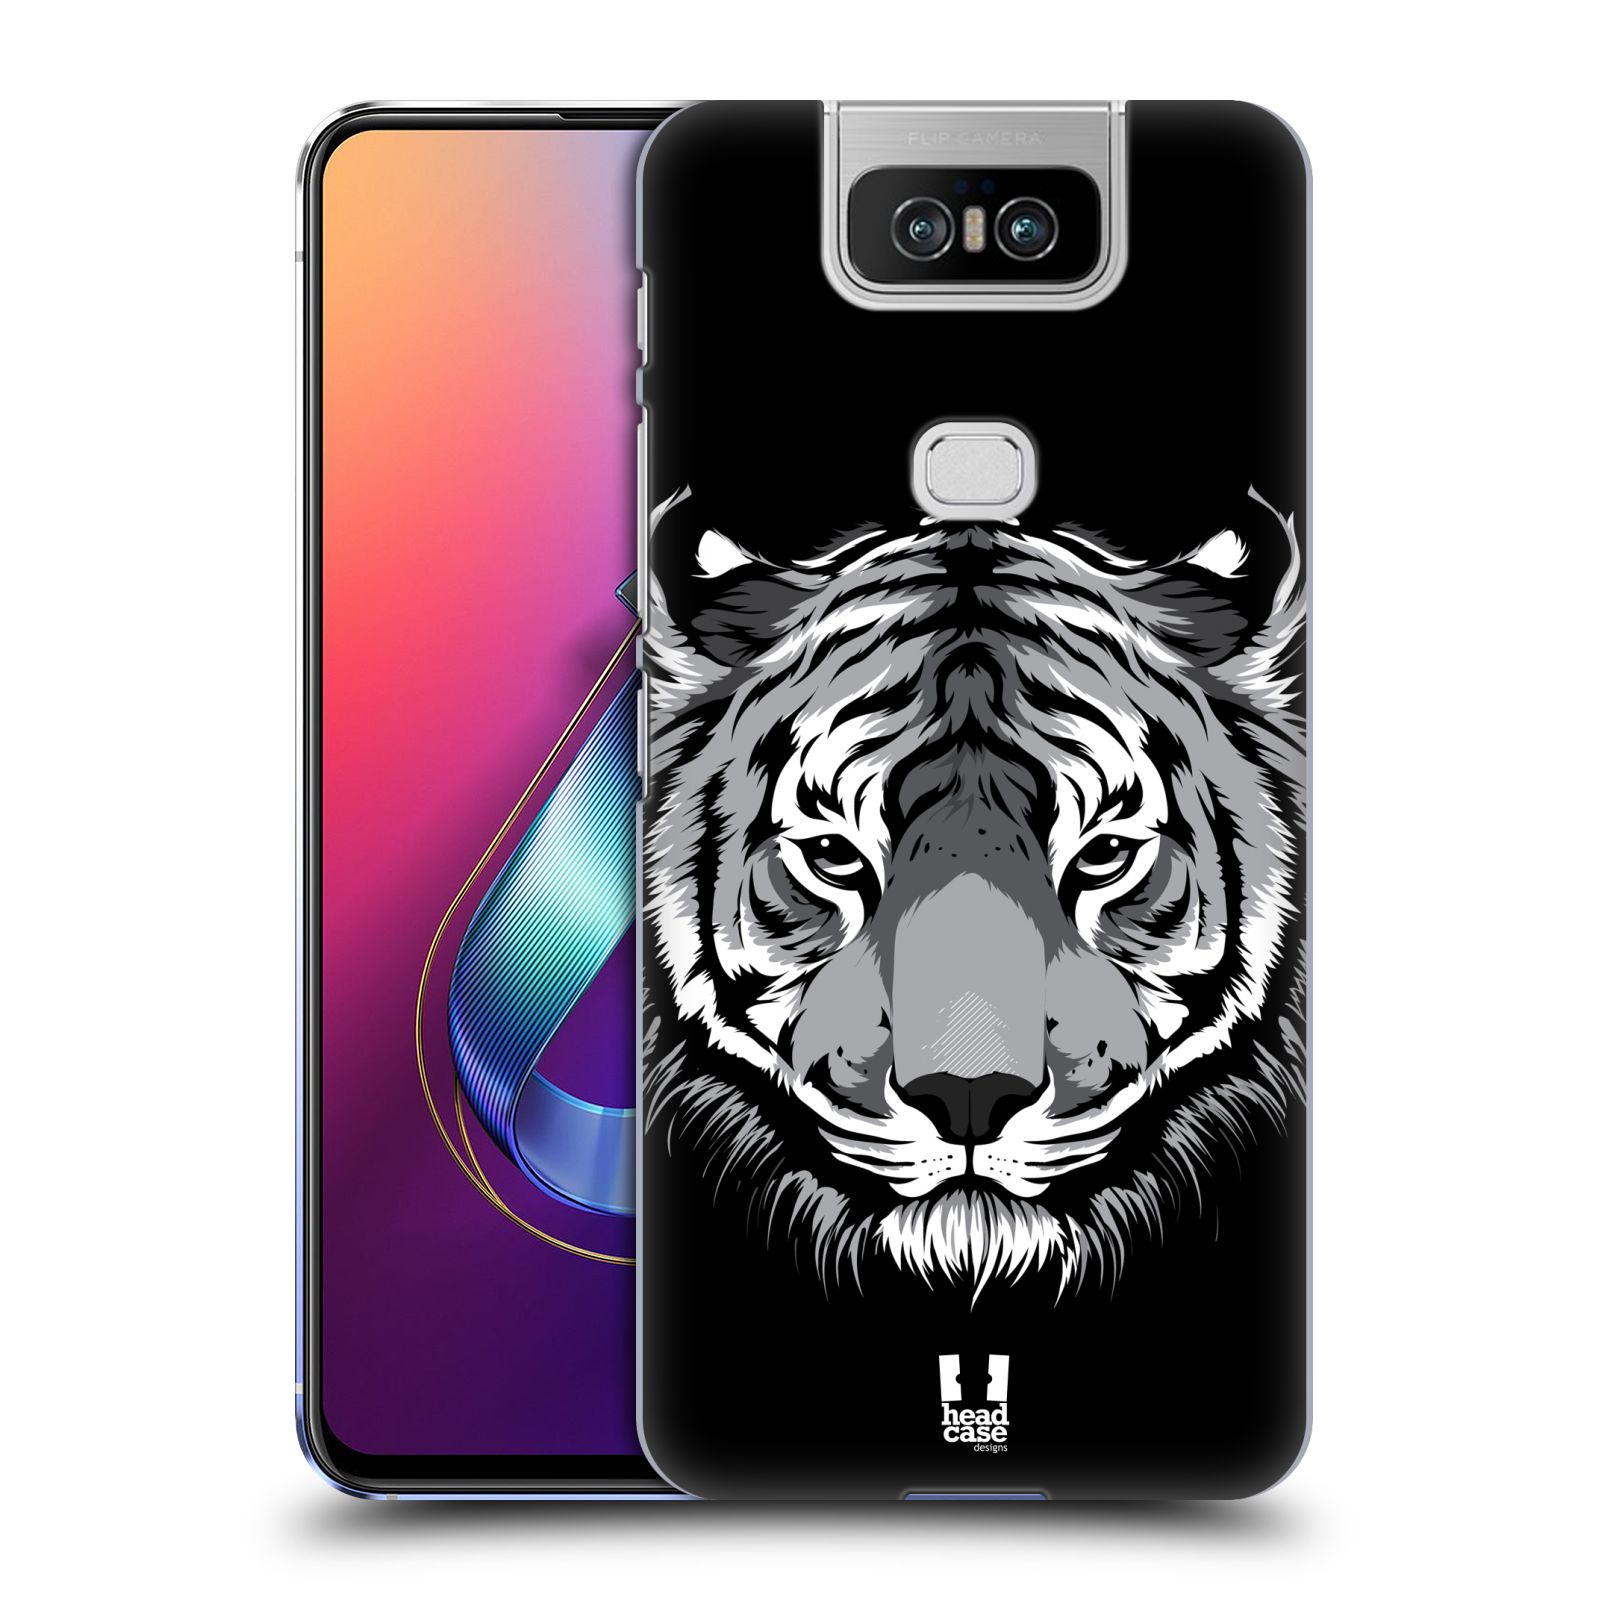 Pouzdro na mobil Asus Zenfone 6 ZS630KL - HEAD CASE - vzor Zvíře kreslená tvář 2 tygr